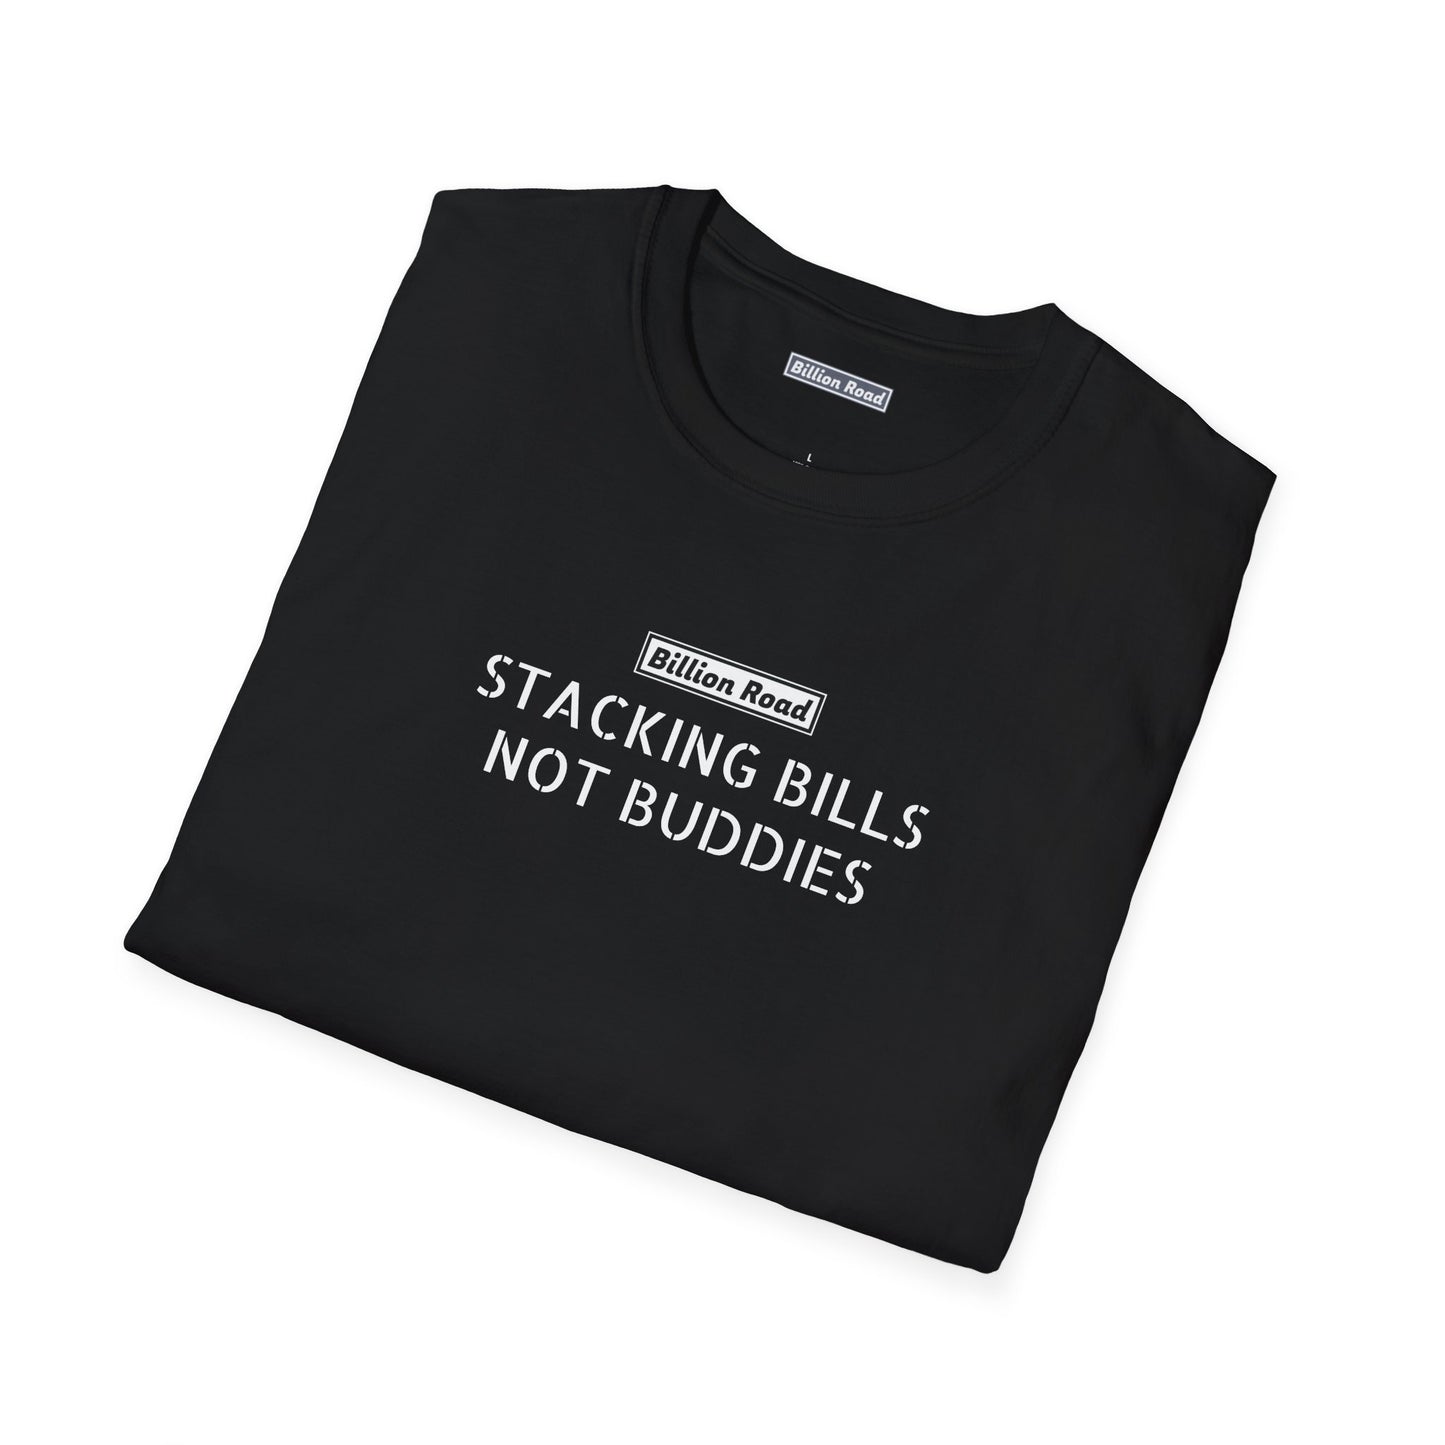 Stacking Bills not Buddies Tee